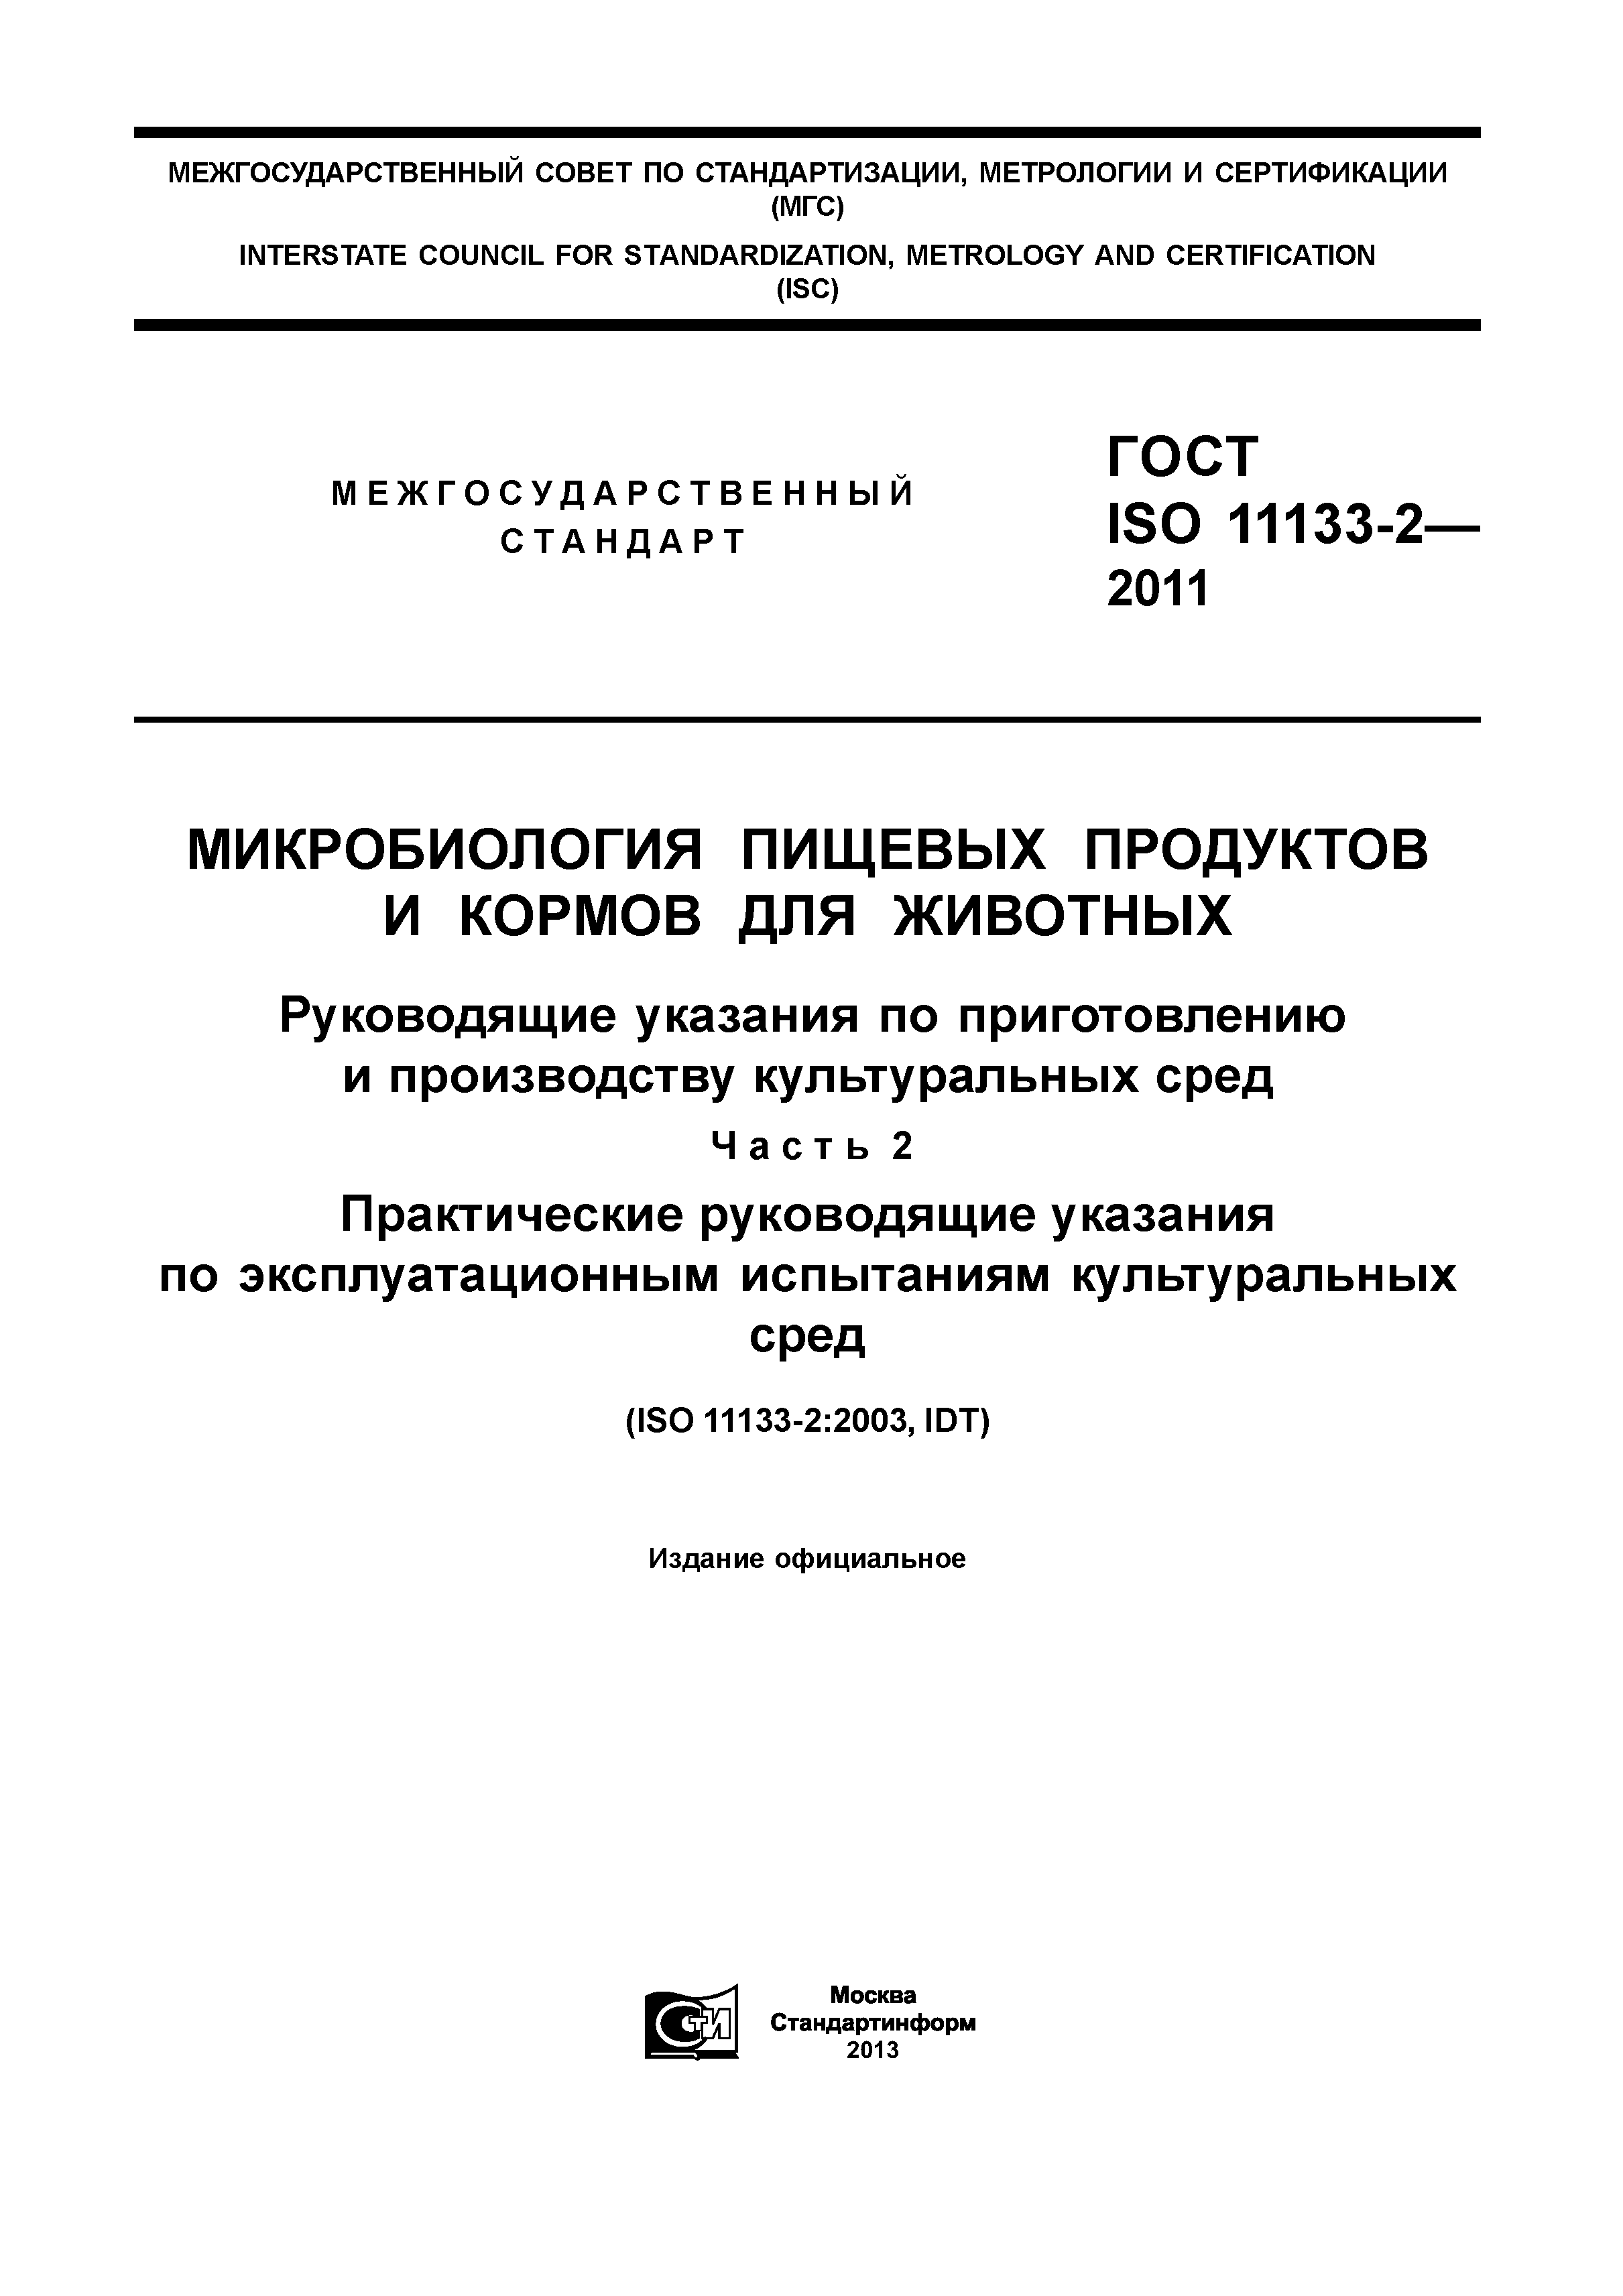 ГОСТ ISO 11133-2-2011